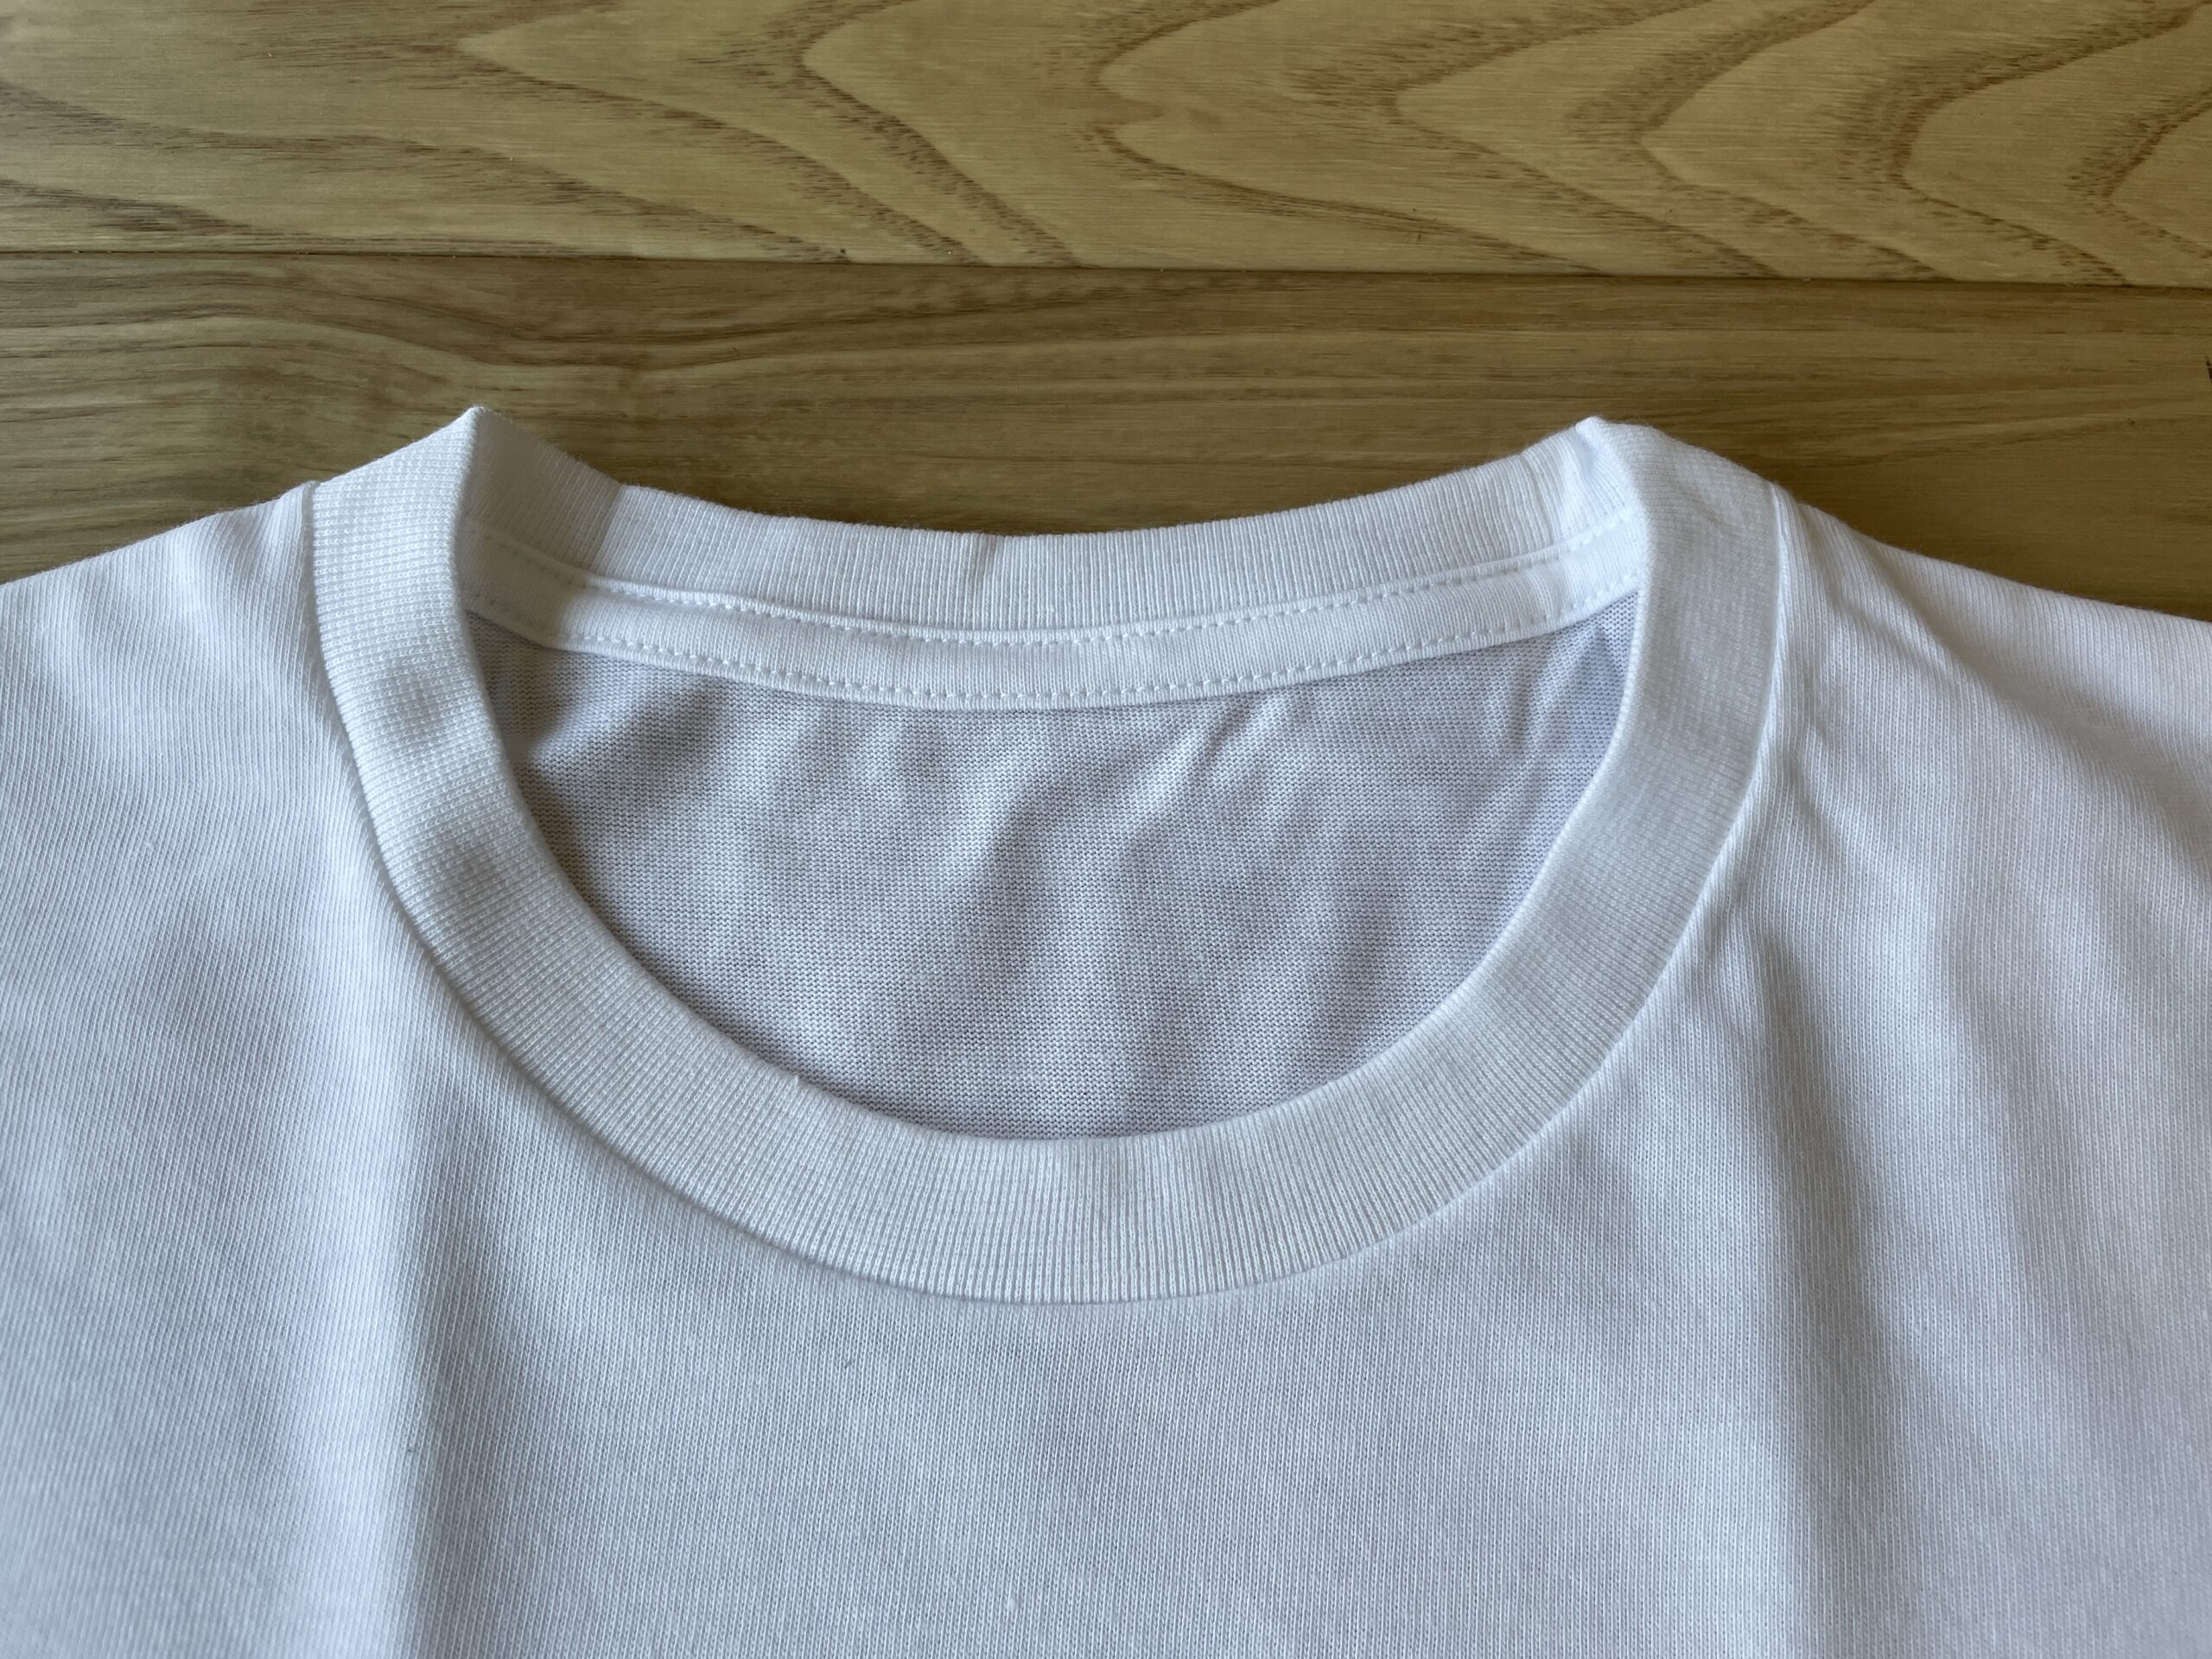 ユニクロカラークルーネックTシャツ半袖襟画像